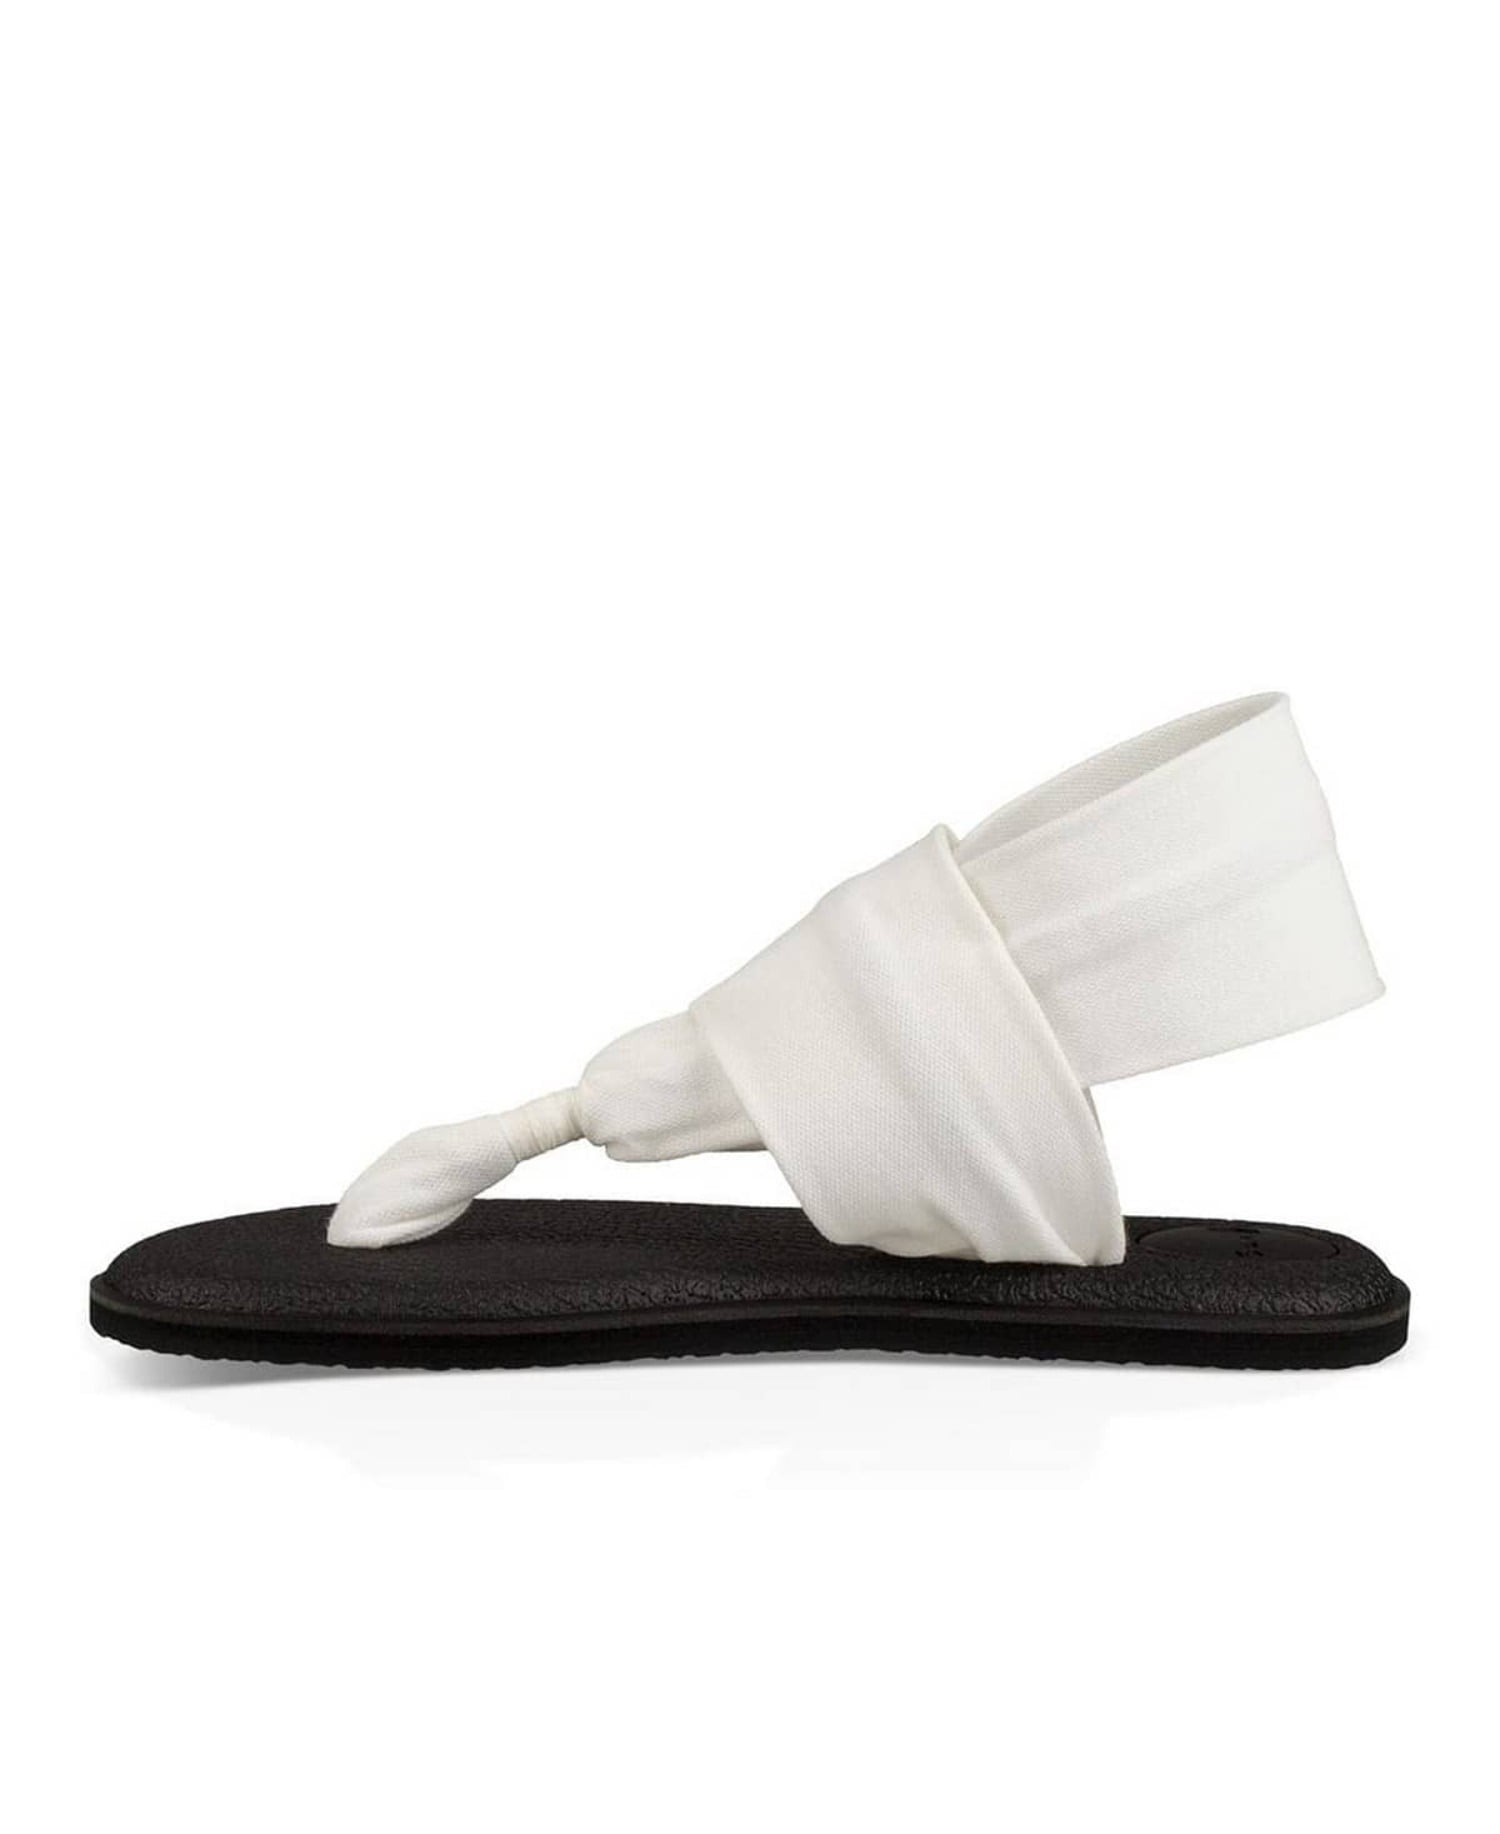 Women's Yoga Sling 2 White Sandal - 7M 